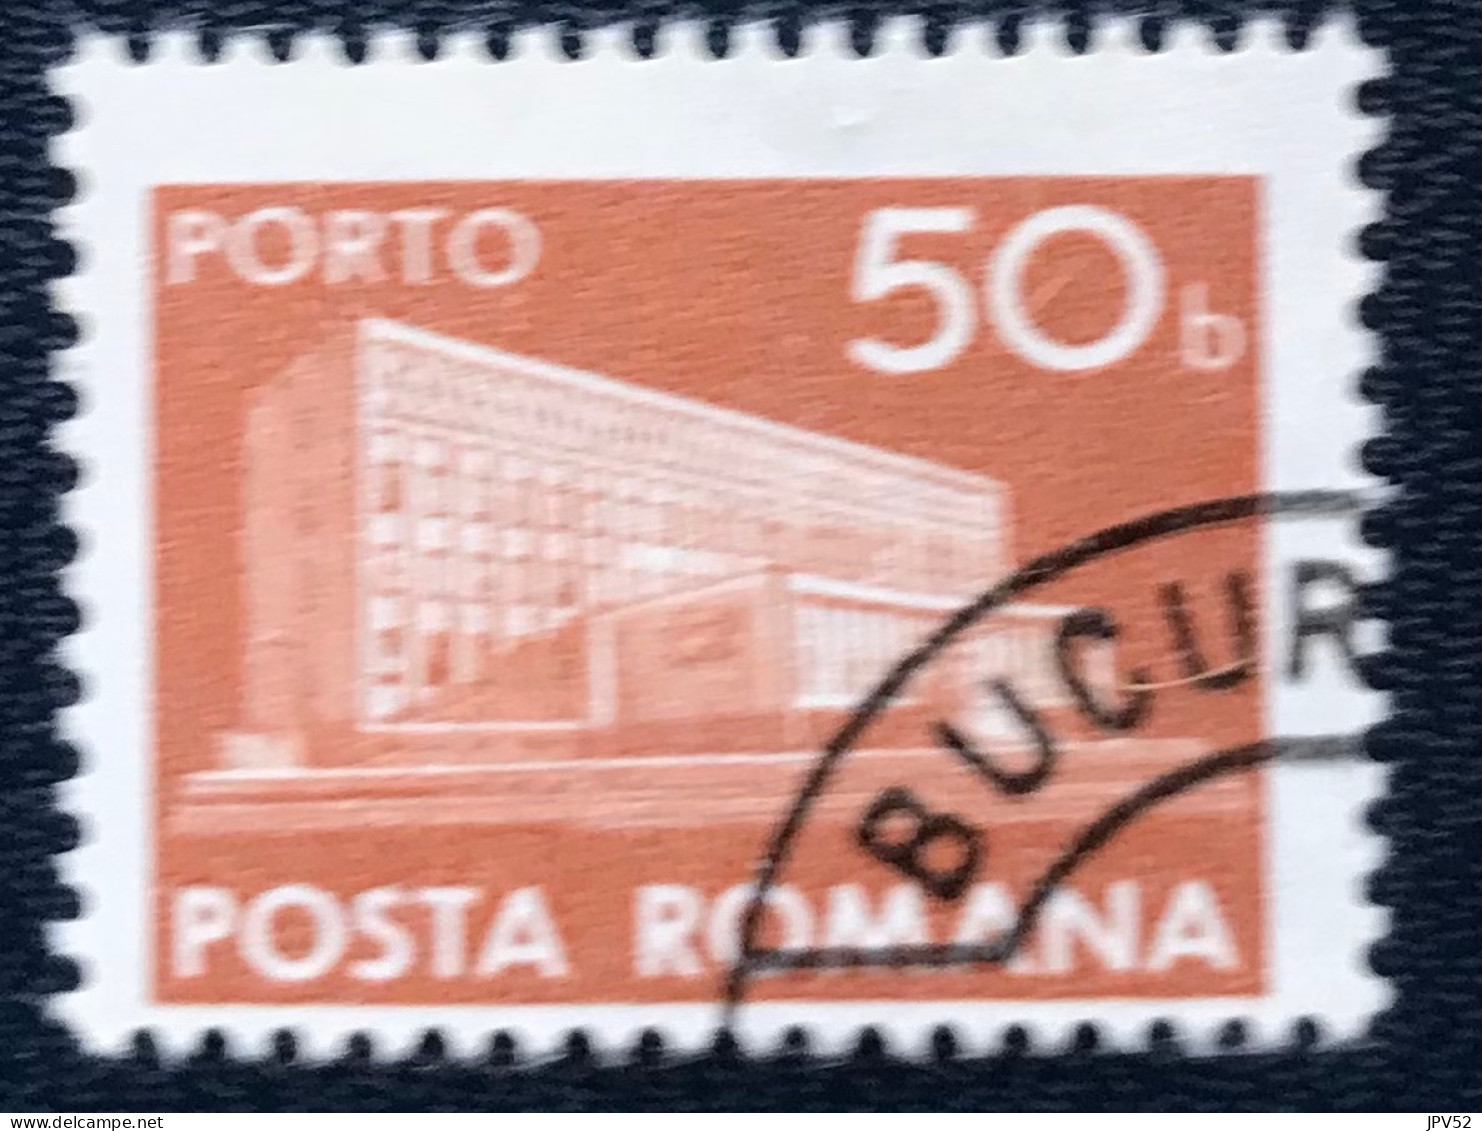 Romana - Roemenië - C14/55 - 1974 - (°)used - Michel 123 - Postkantoor - Postage Due